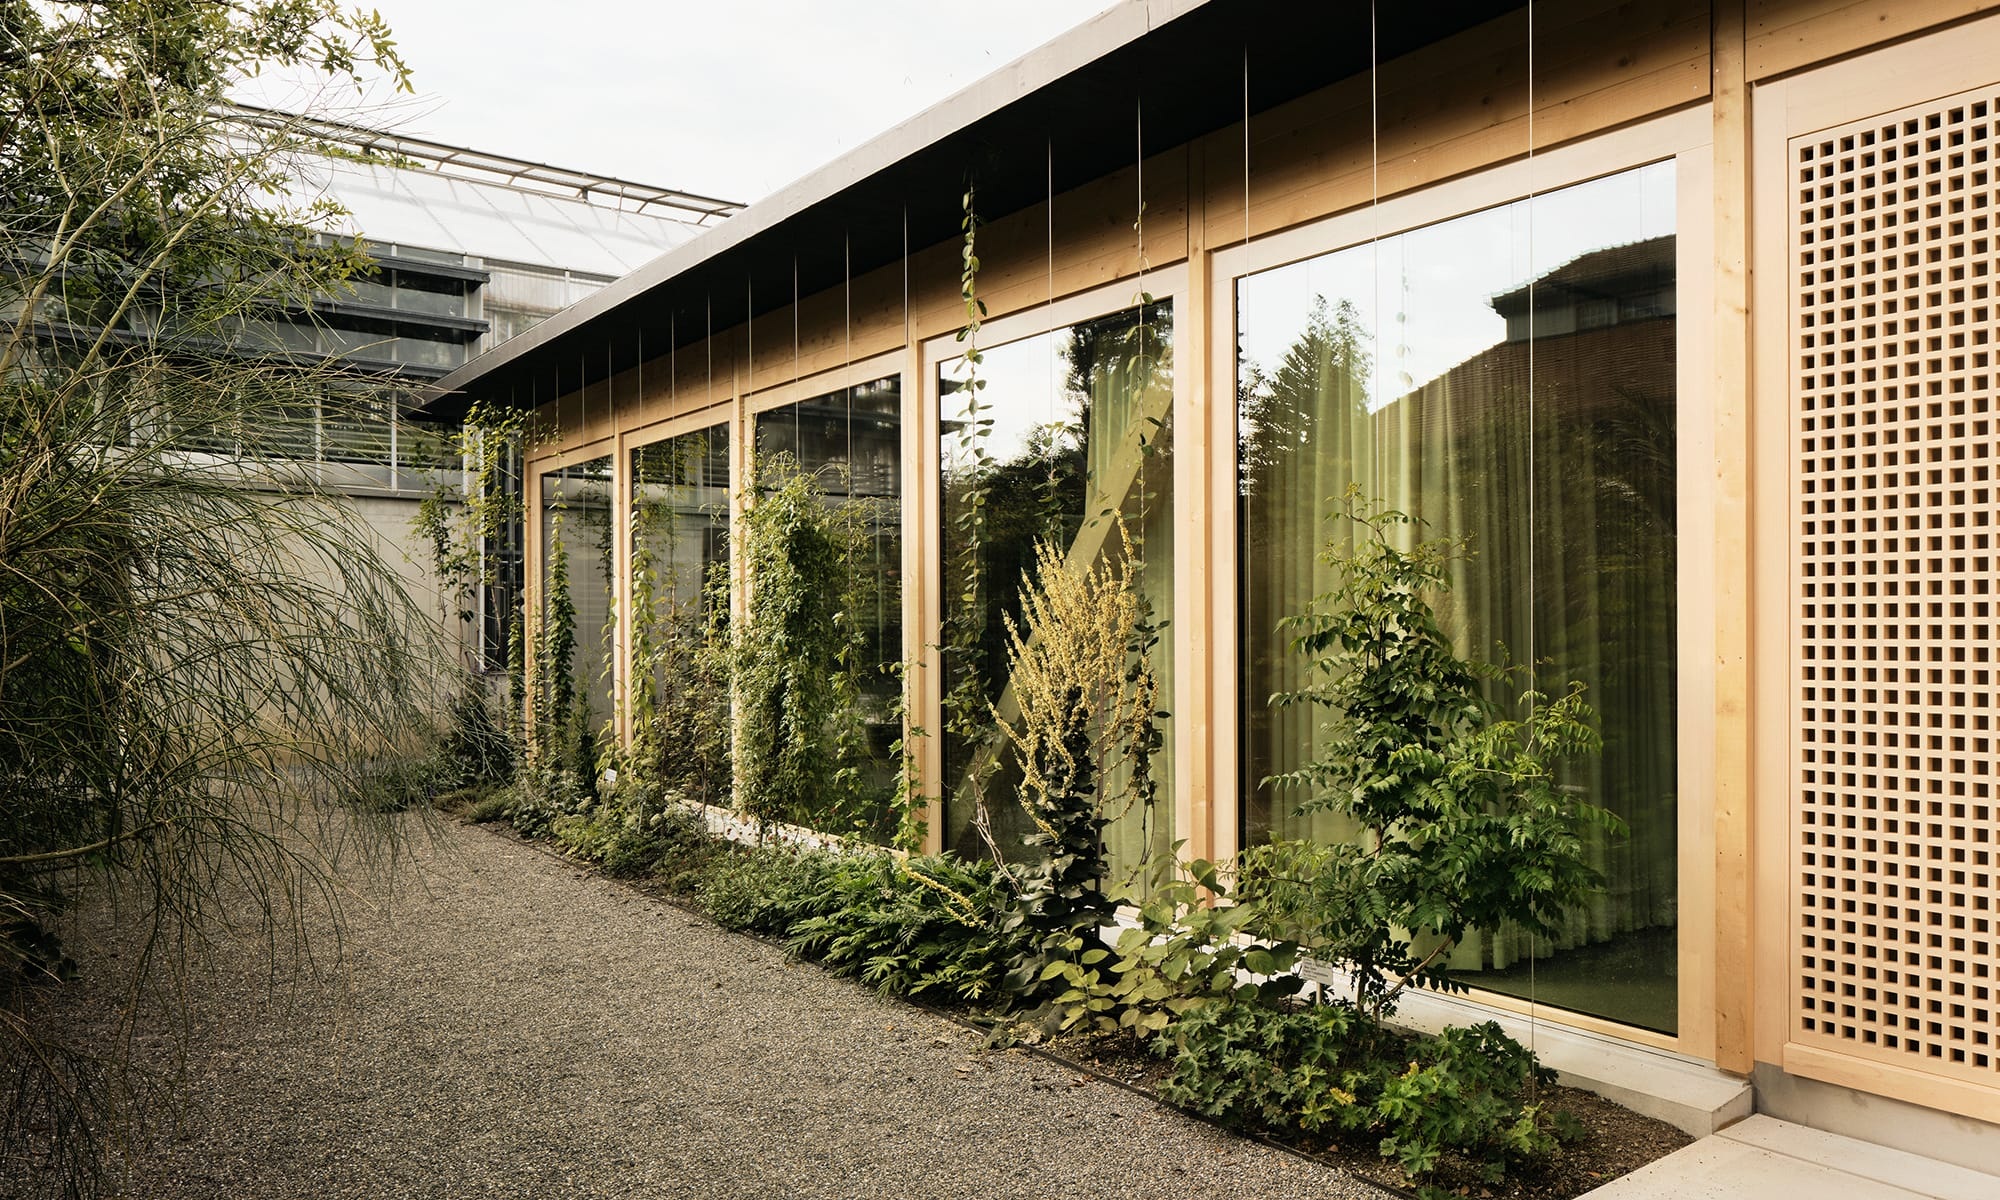 Vortragssaal im botanischen Garten St. Gallen - vor den Glasfenstern des Holzneubaus ranken sich Pflanzen zum Dach empor.